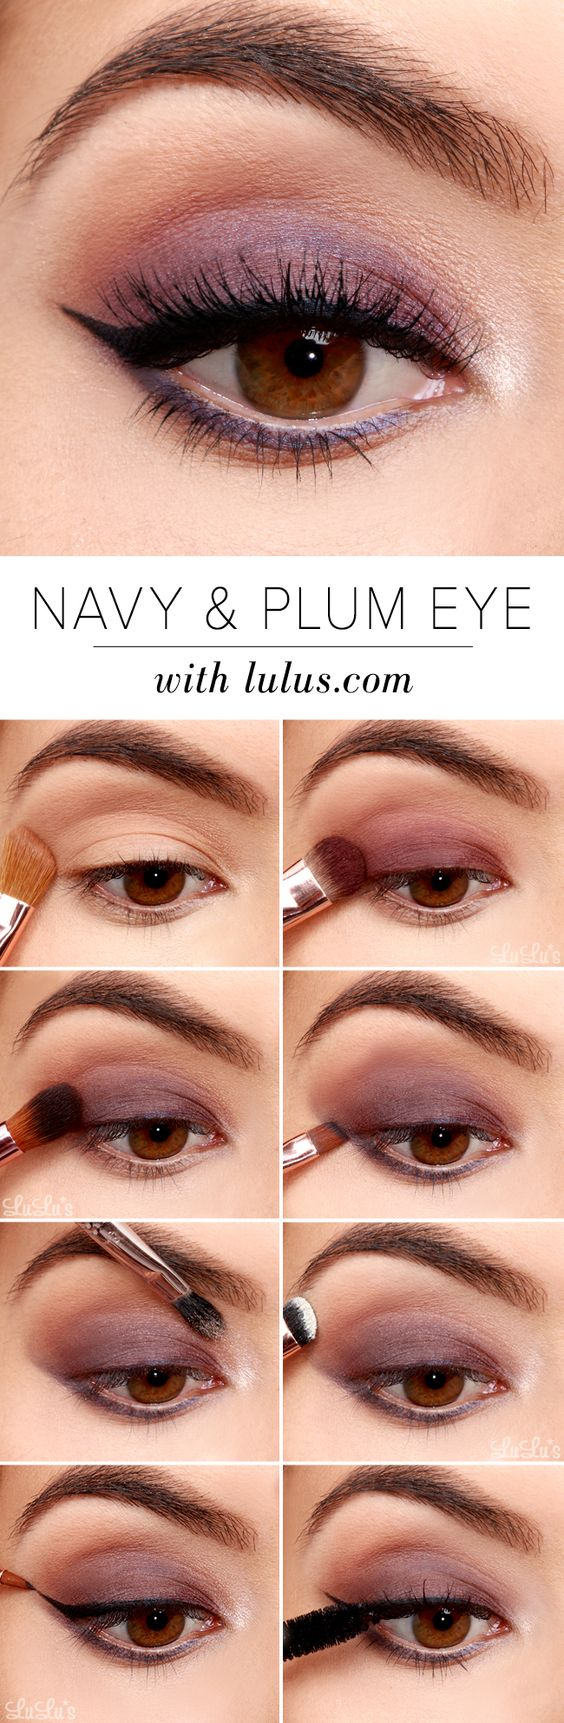 Simple Eye Makeup Tutorial 32 Easy Step Step Eyeshadow Tutorials For Beginners Styles Weekly